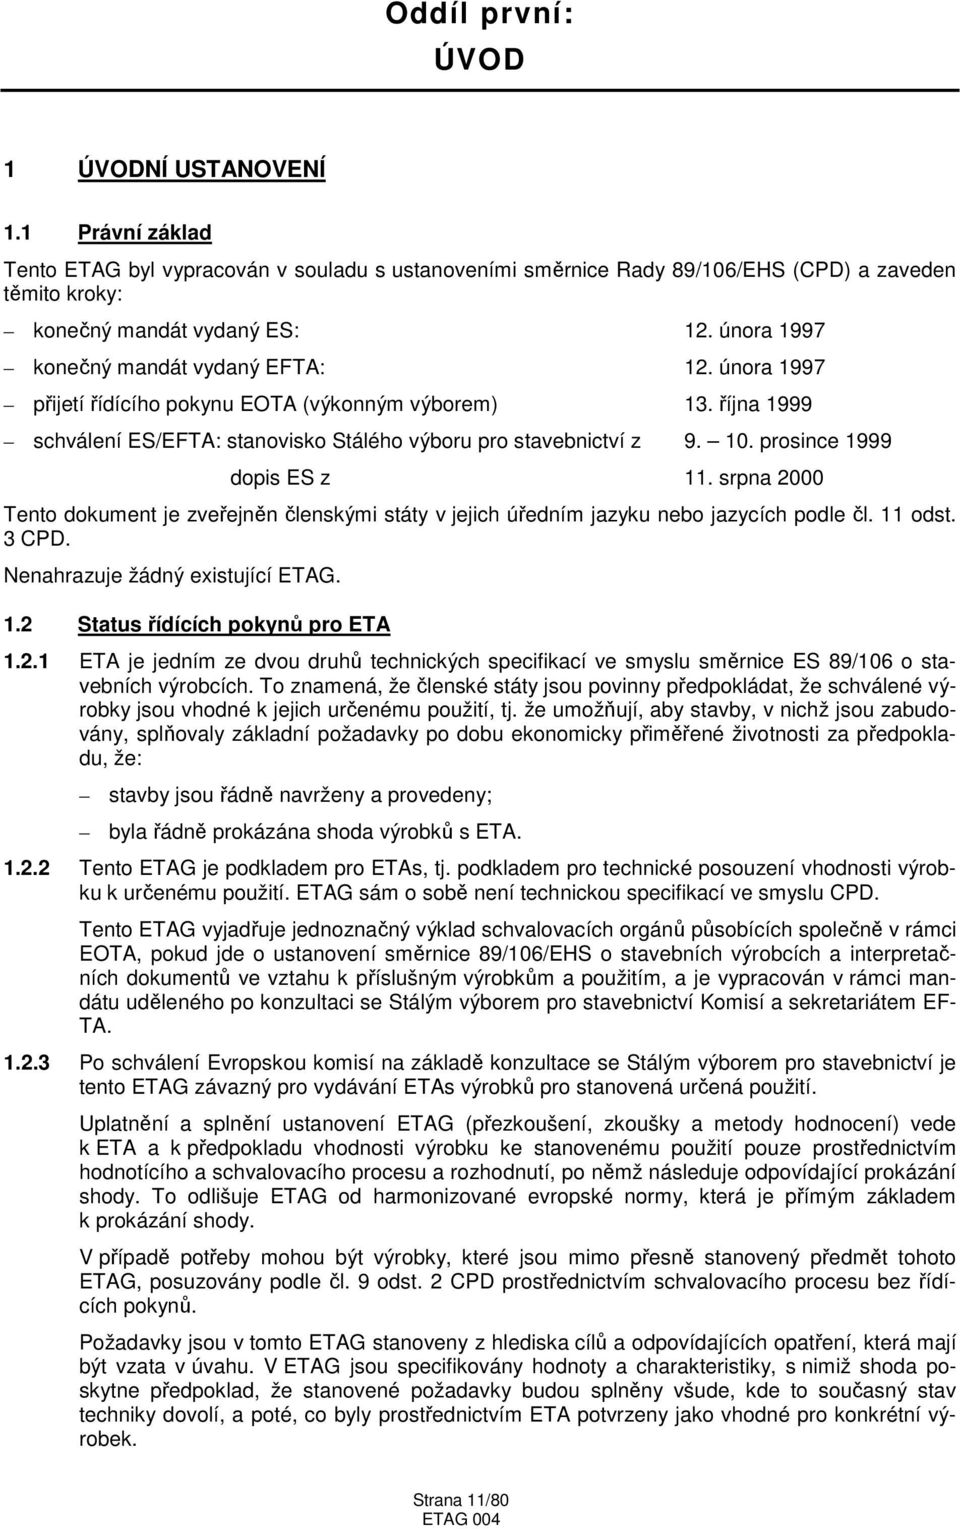 prosince 1999 dopis ES z 11. srpna 2000 Tento dokument je zveřejněn členskými státy v jejich úředním jazyku nebo jazycích podle čl. 11 odst. 3 CPD. Nenahrazuje žádný existující ETAG. 1.2 Status řídících pokynů pro ETA 1.